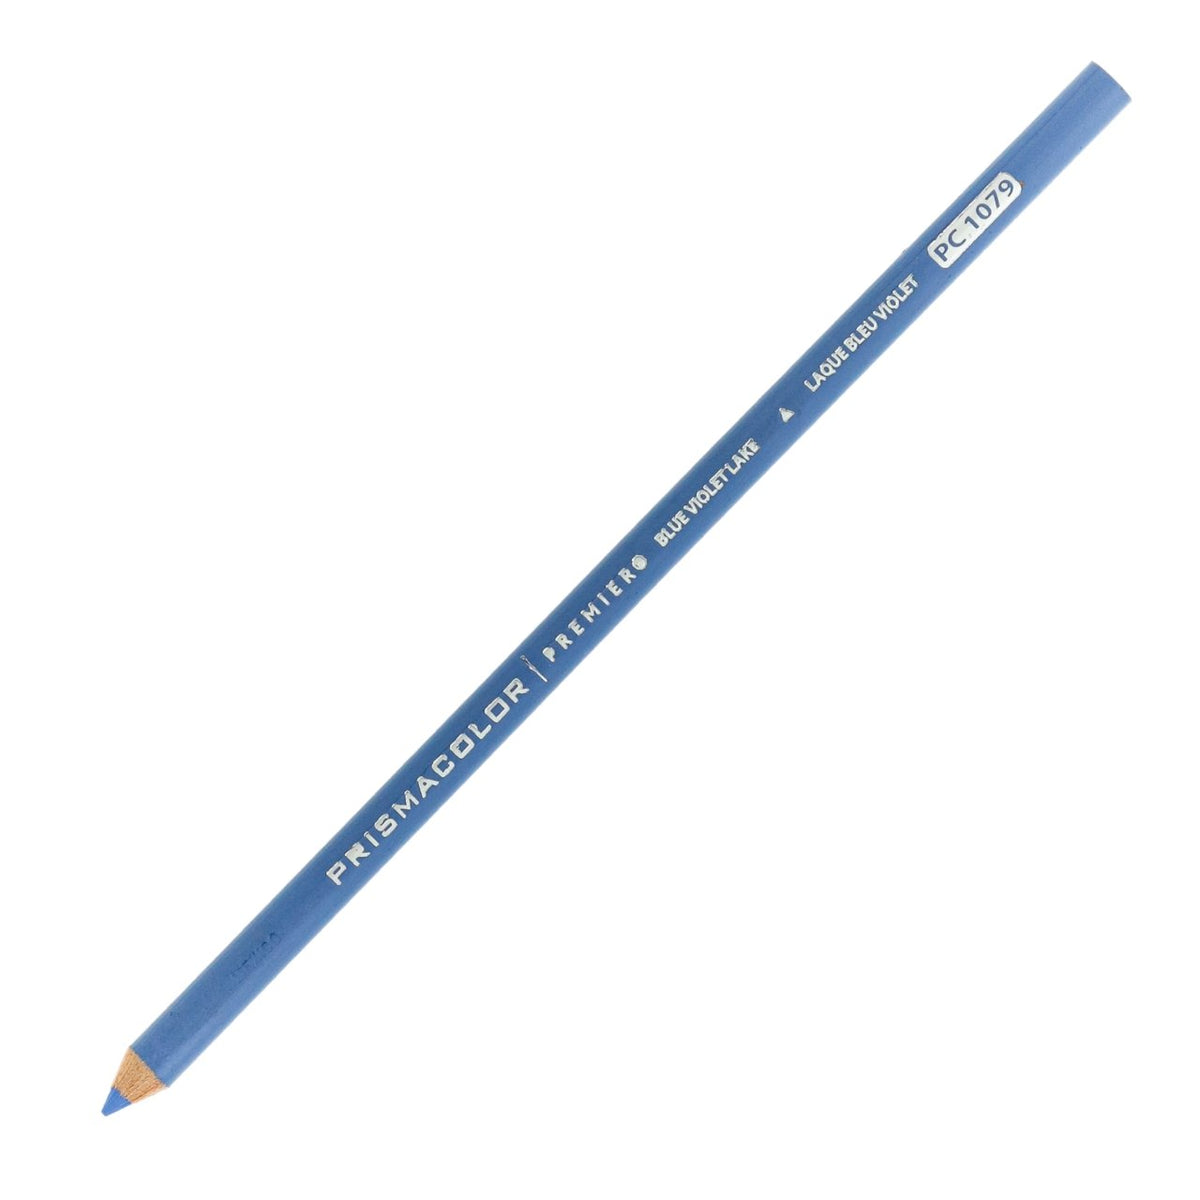 Prismacolor Premier Colored Pencil - Blue Violet Lake 1079 